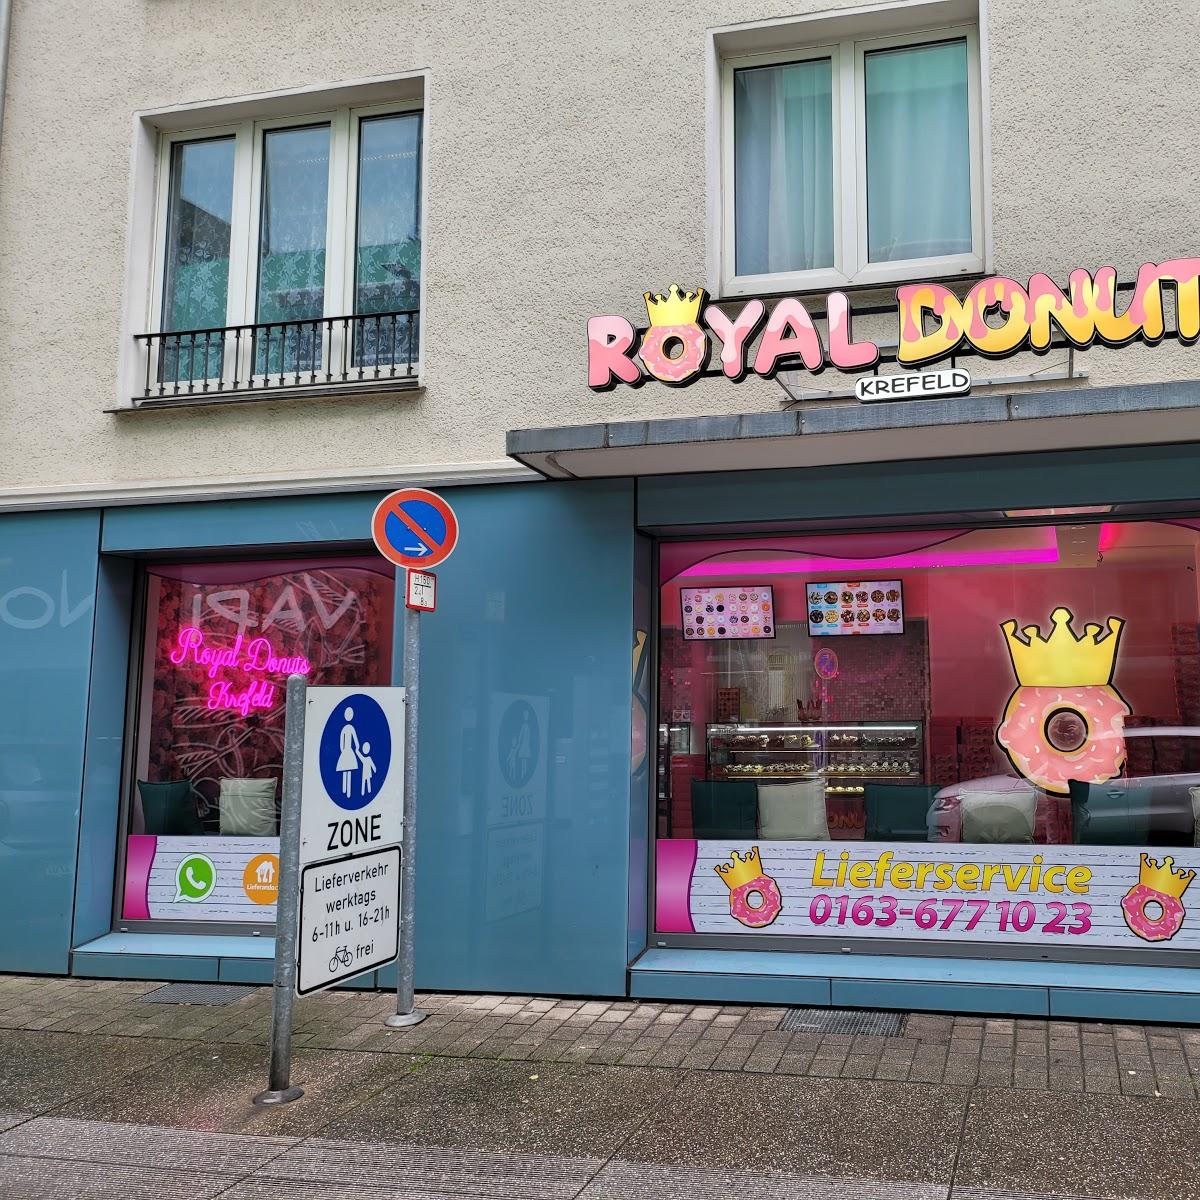 Restaurant "Royal Donuts" in Krefeld